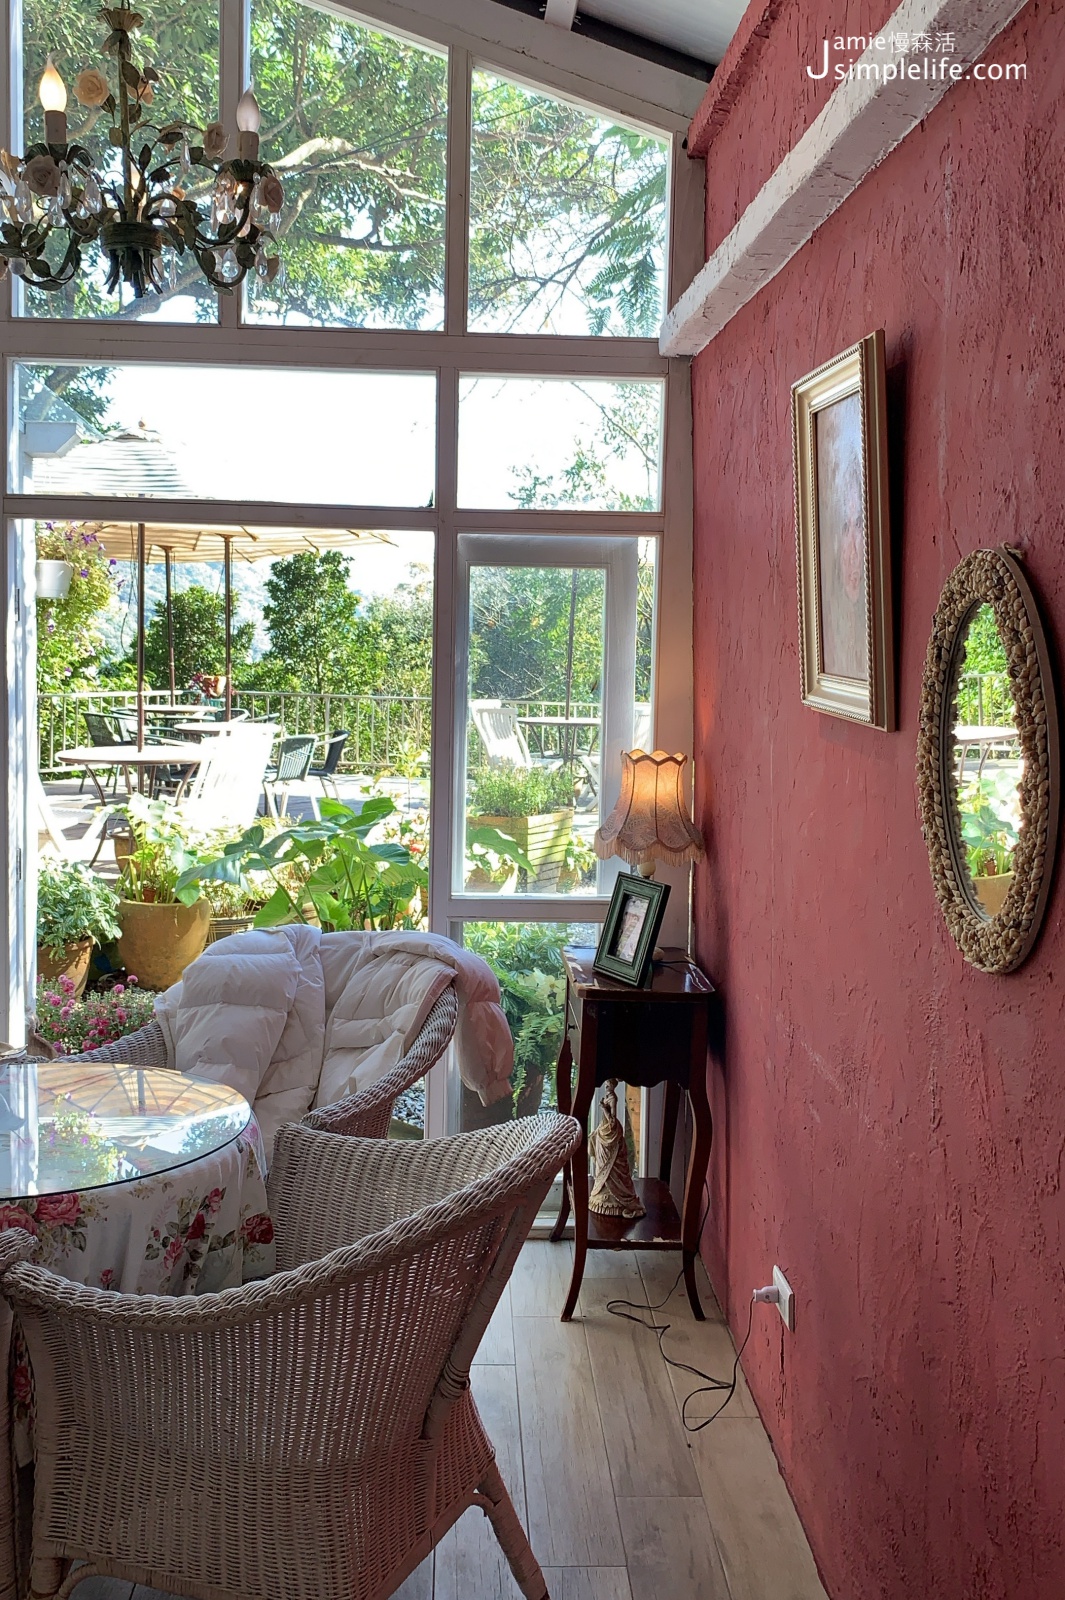 陽明山蒙馬特影像咖啡 裝飾偏甜的用餐環境與氛圍 室內空間